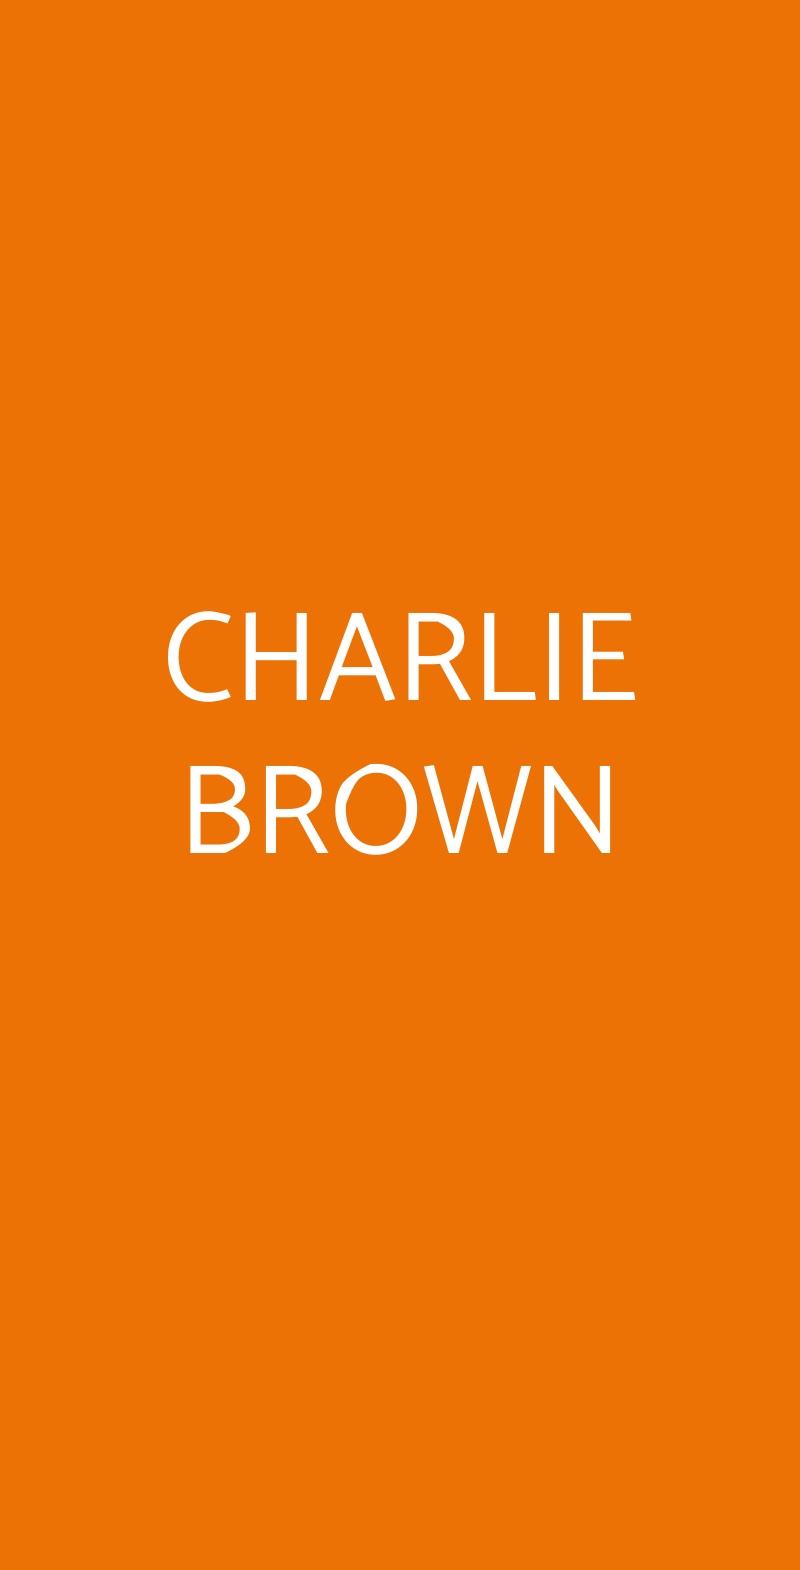 CHARLIE BROWN Milano menù 1 pagina